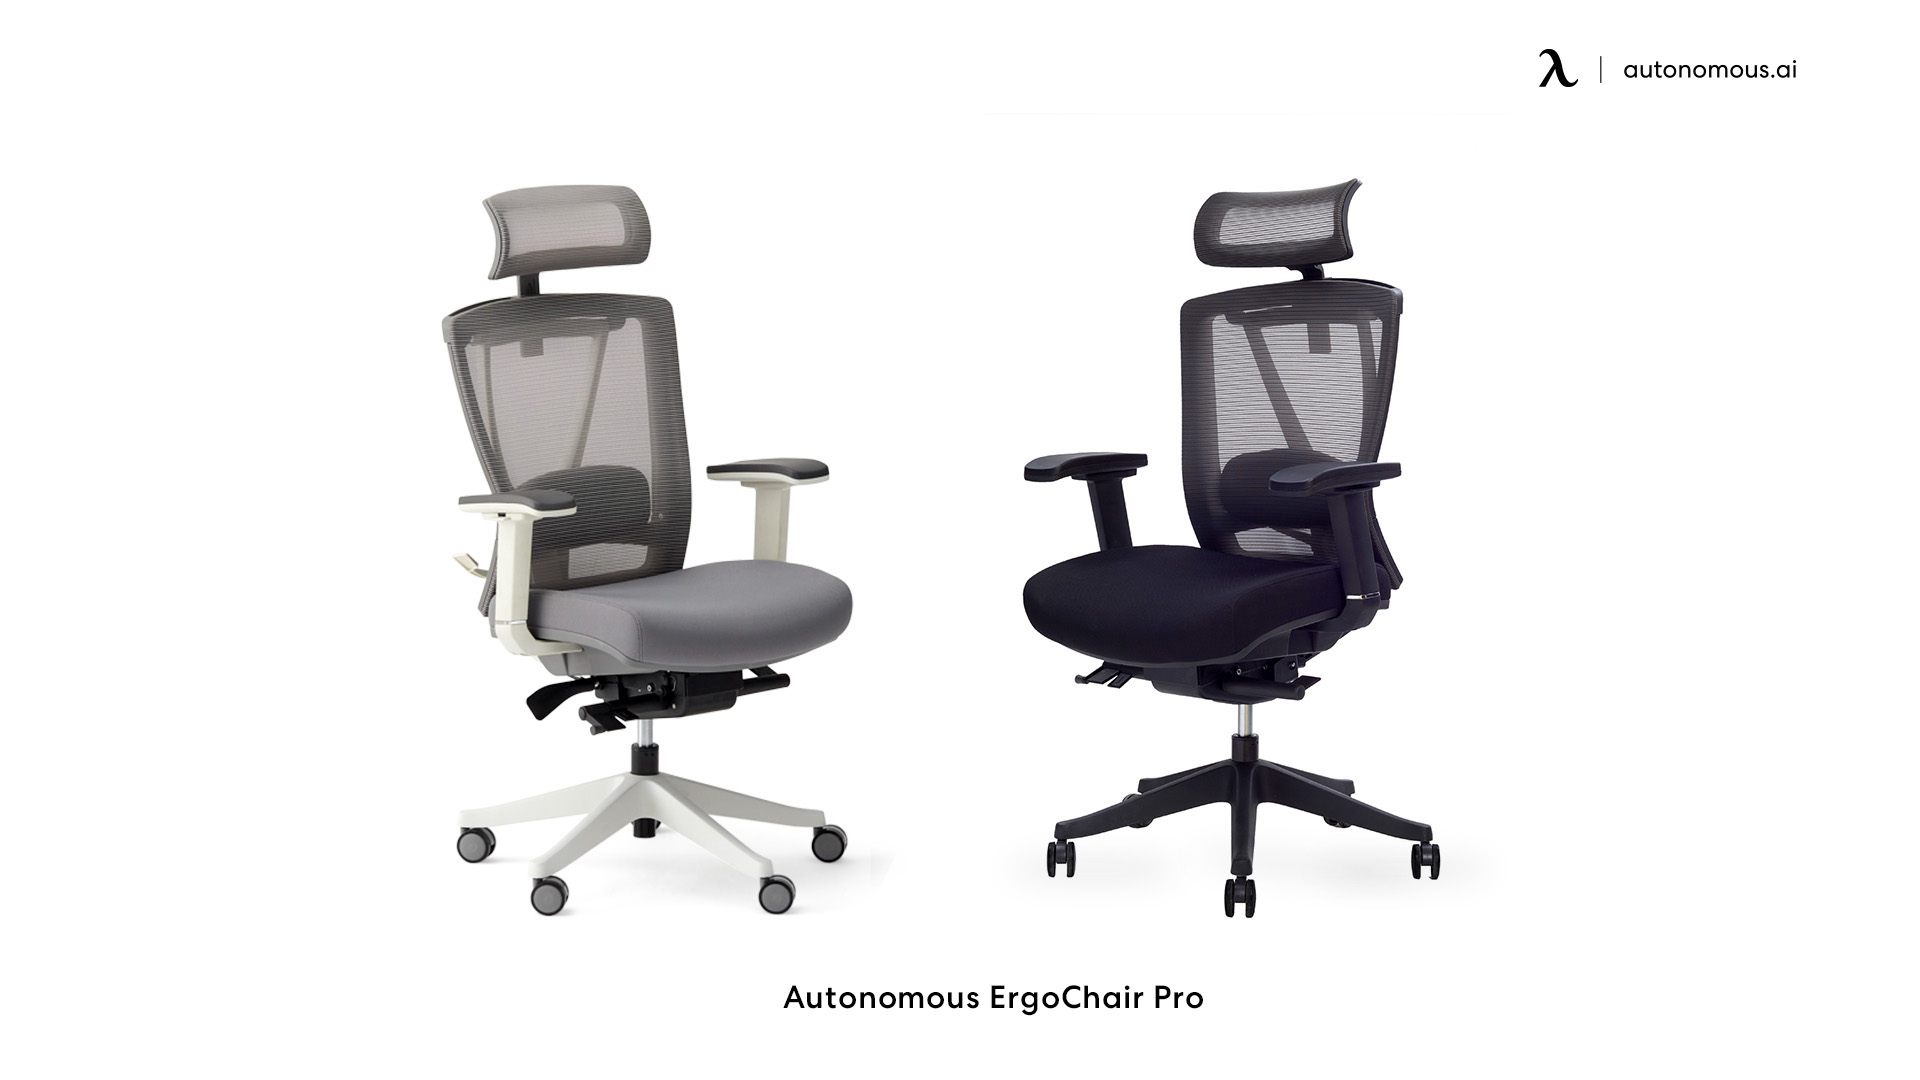 ErgoChair Pro soft desk chair